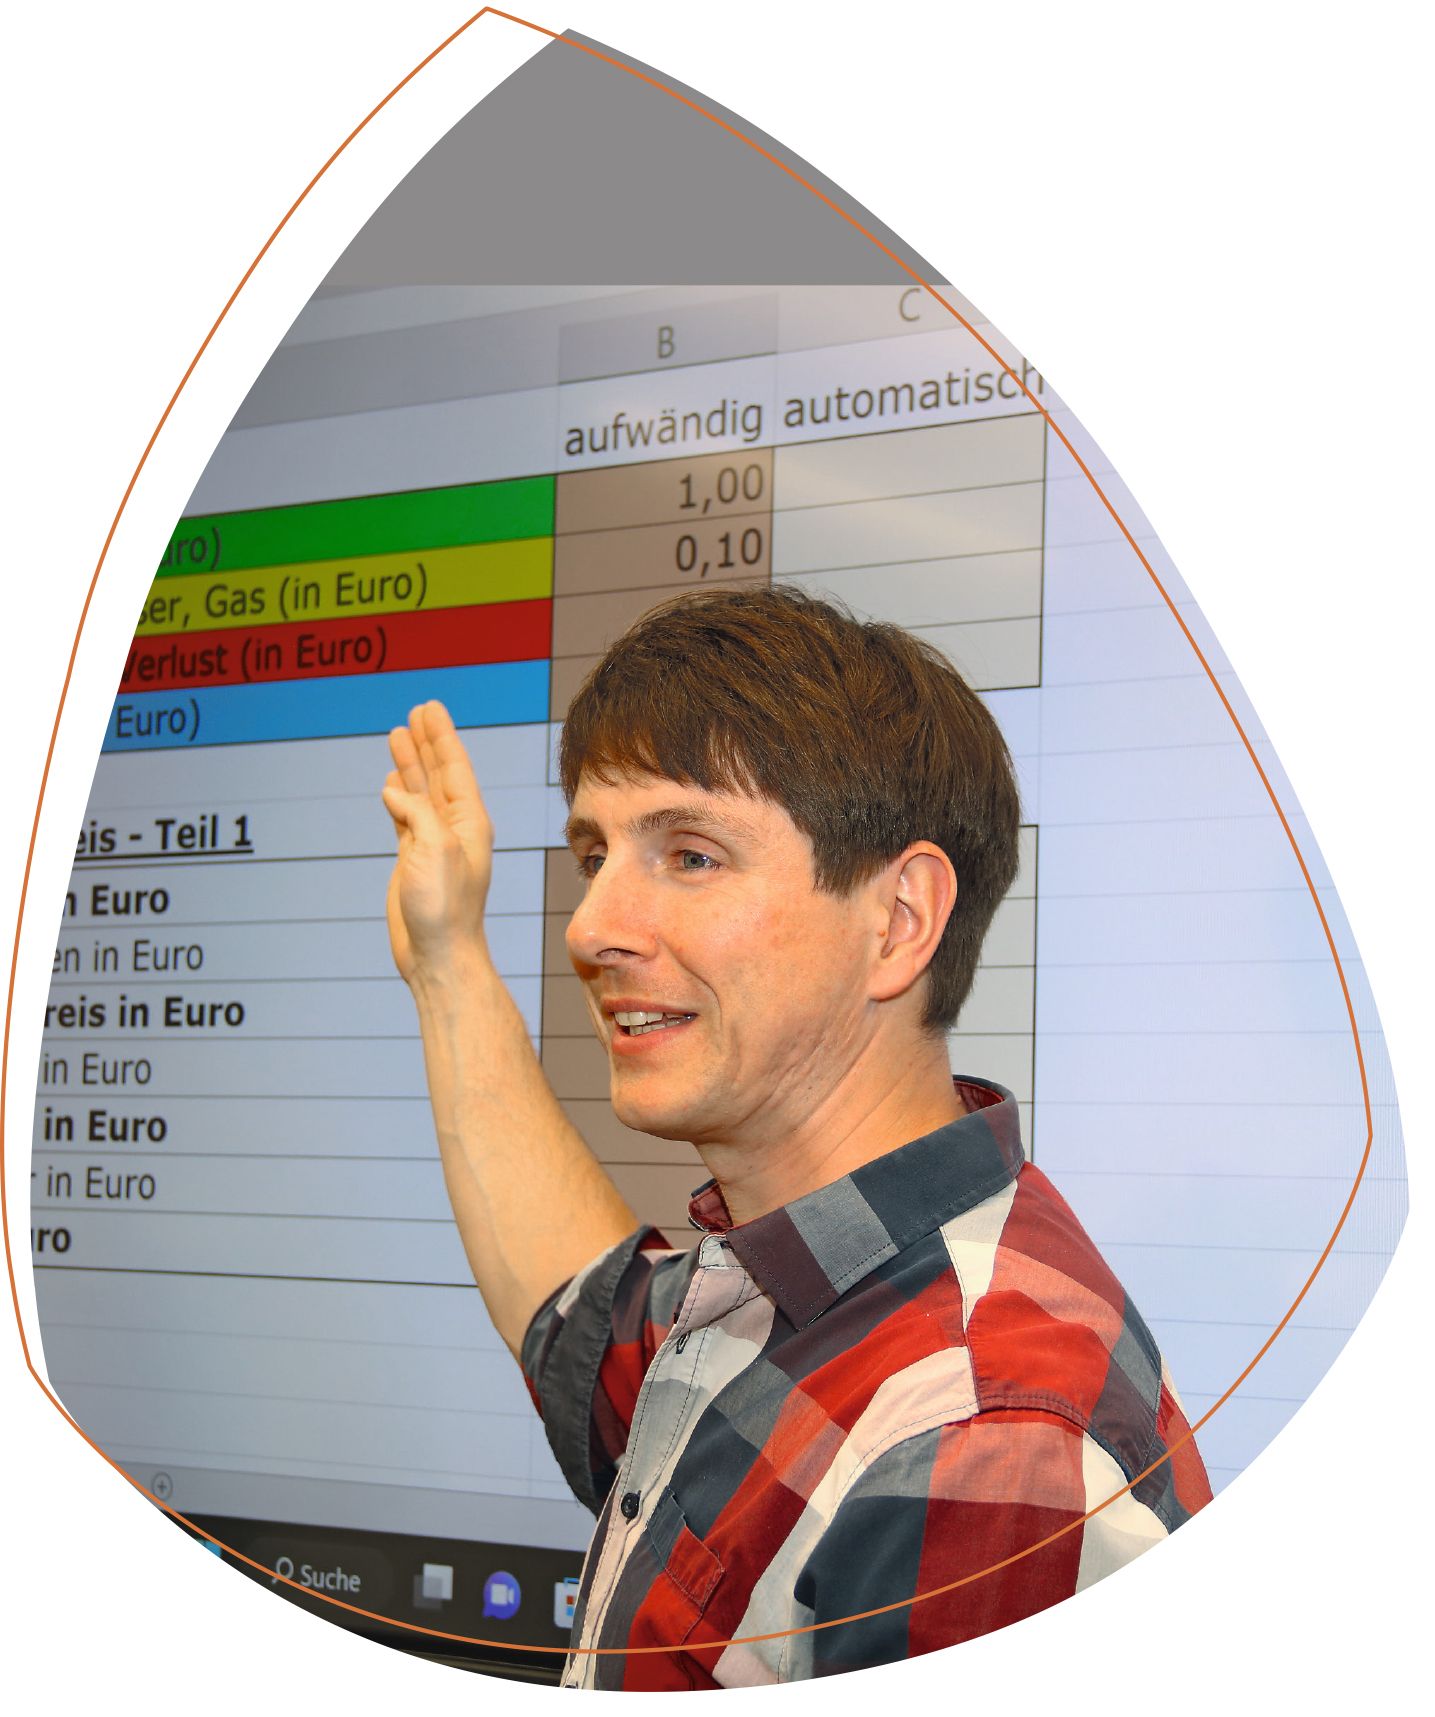 Klassenlehrer Tobias Rehnolt, der auf die Tafel zeigt. Auf dieser werden die Inhalte einer Excel-Liste projiziert. Er trägt ein kariertes Hemd. 